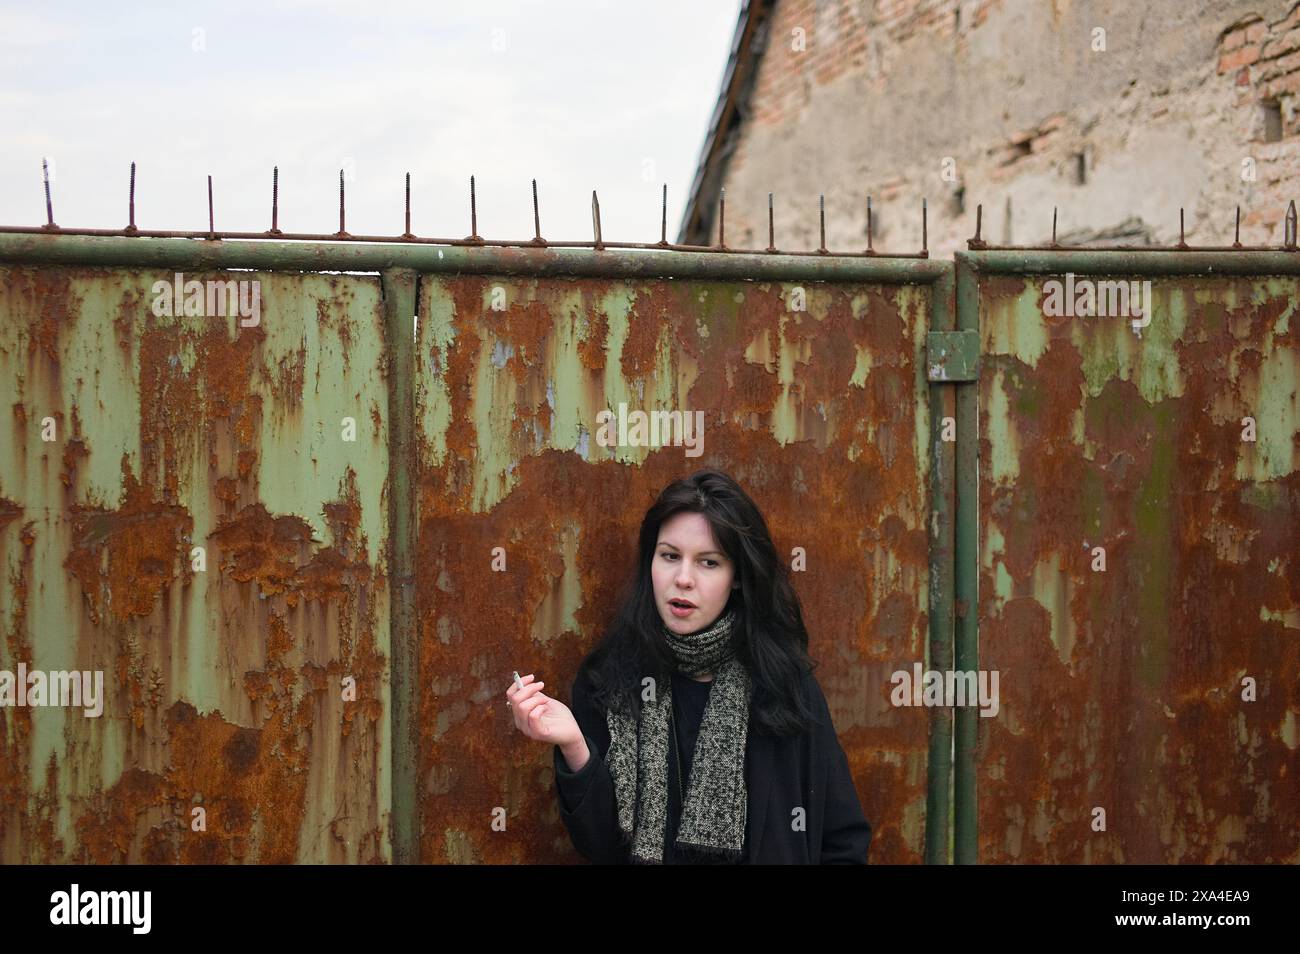 Una donna si trova di fronte a un cancello di metallo arrugginito con punte sulla parte superiore, con un muro di mattoni sullo sfondo, che crea una sorprendente espressione facciale. Foto Stock